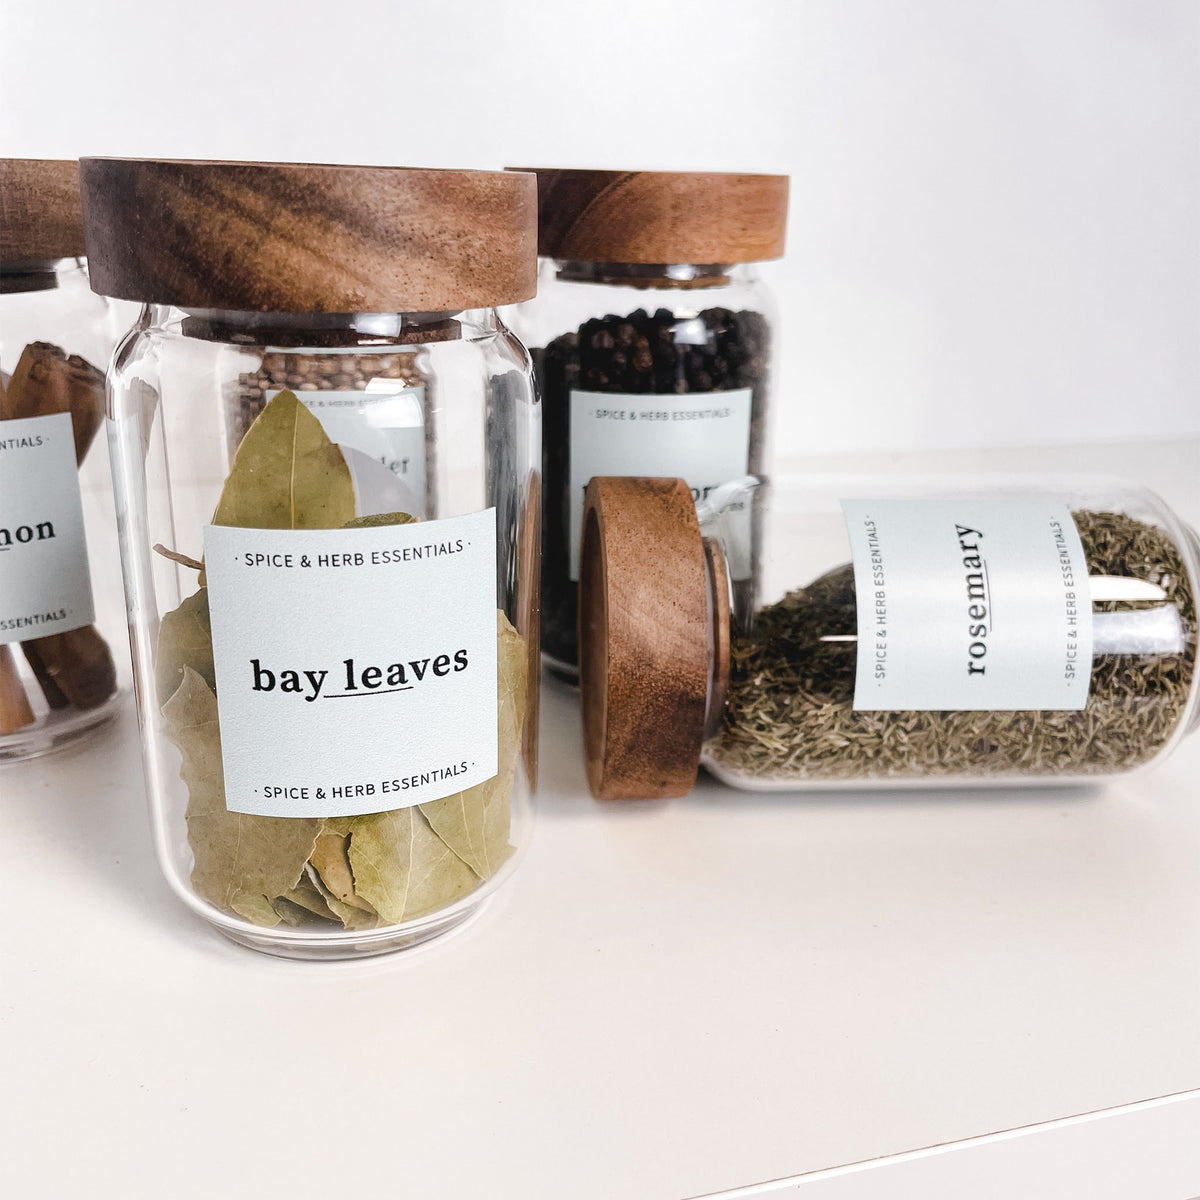 Spice Jar Label Set - Design 9 - Square